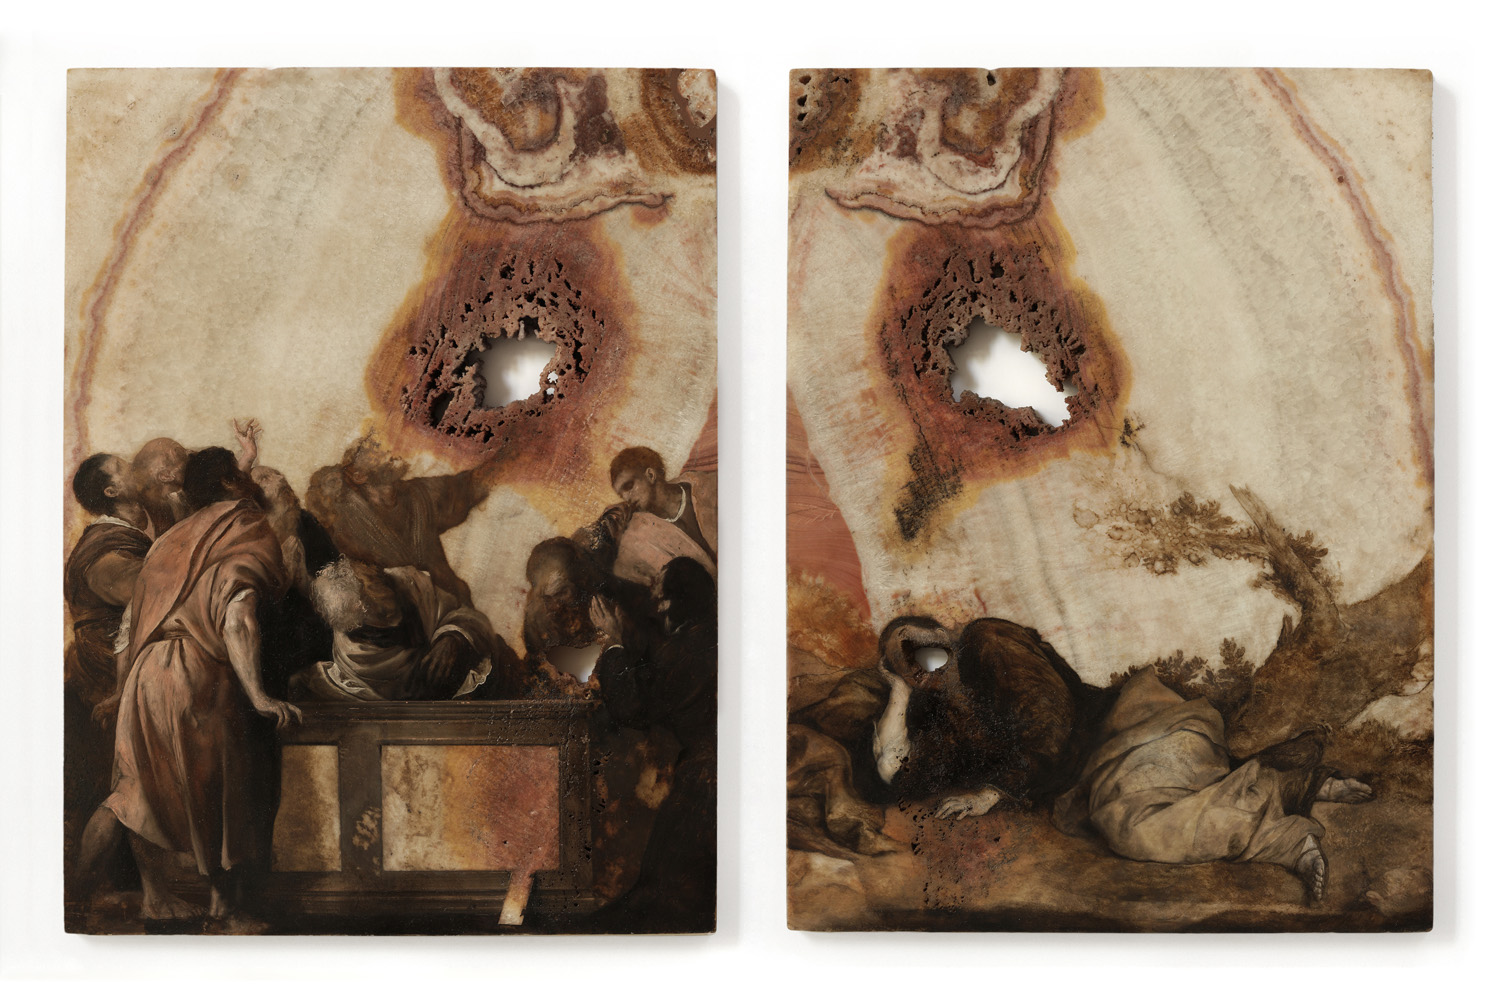 Nicola Samorì, Specula, 2018, olio su onice, dittico, ciascuno 40 x 30 cm, collezione privata, courtesy Monitor, Roma